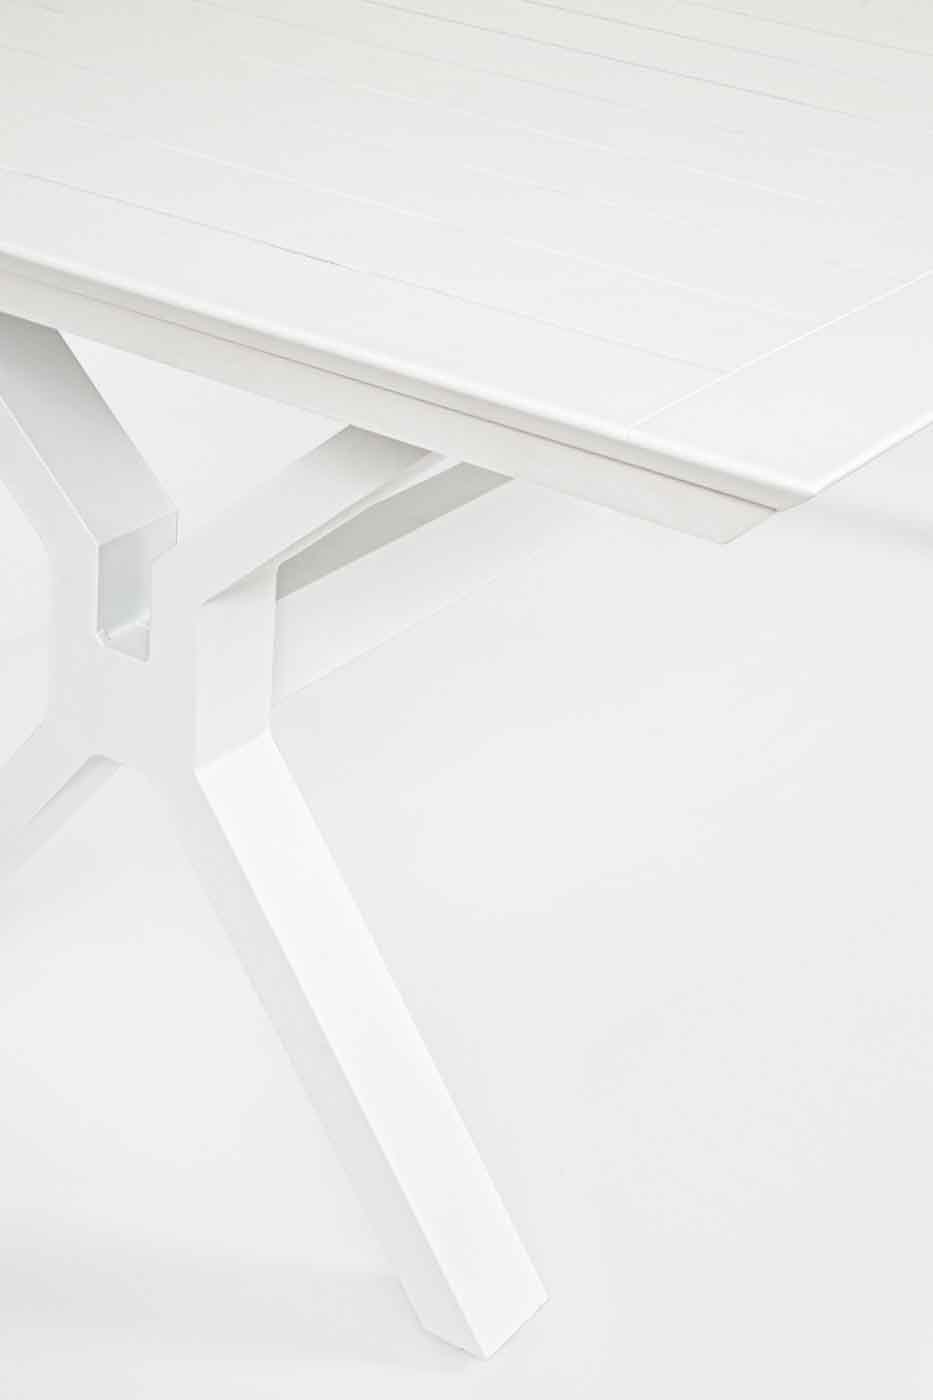 Gartentisch Kenyon Ausziehbar, 200-300x110 cm, Weiß